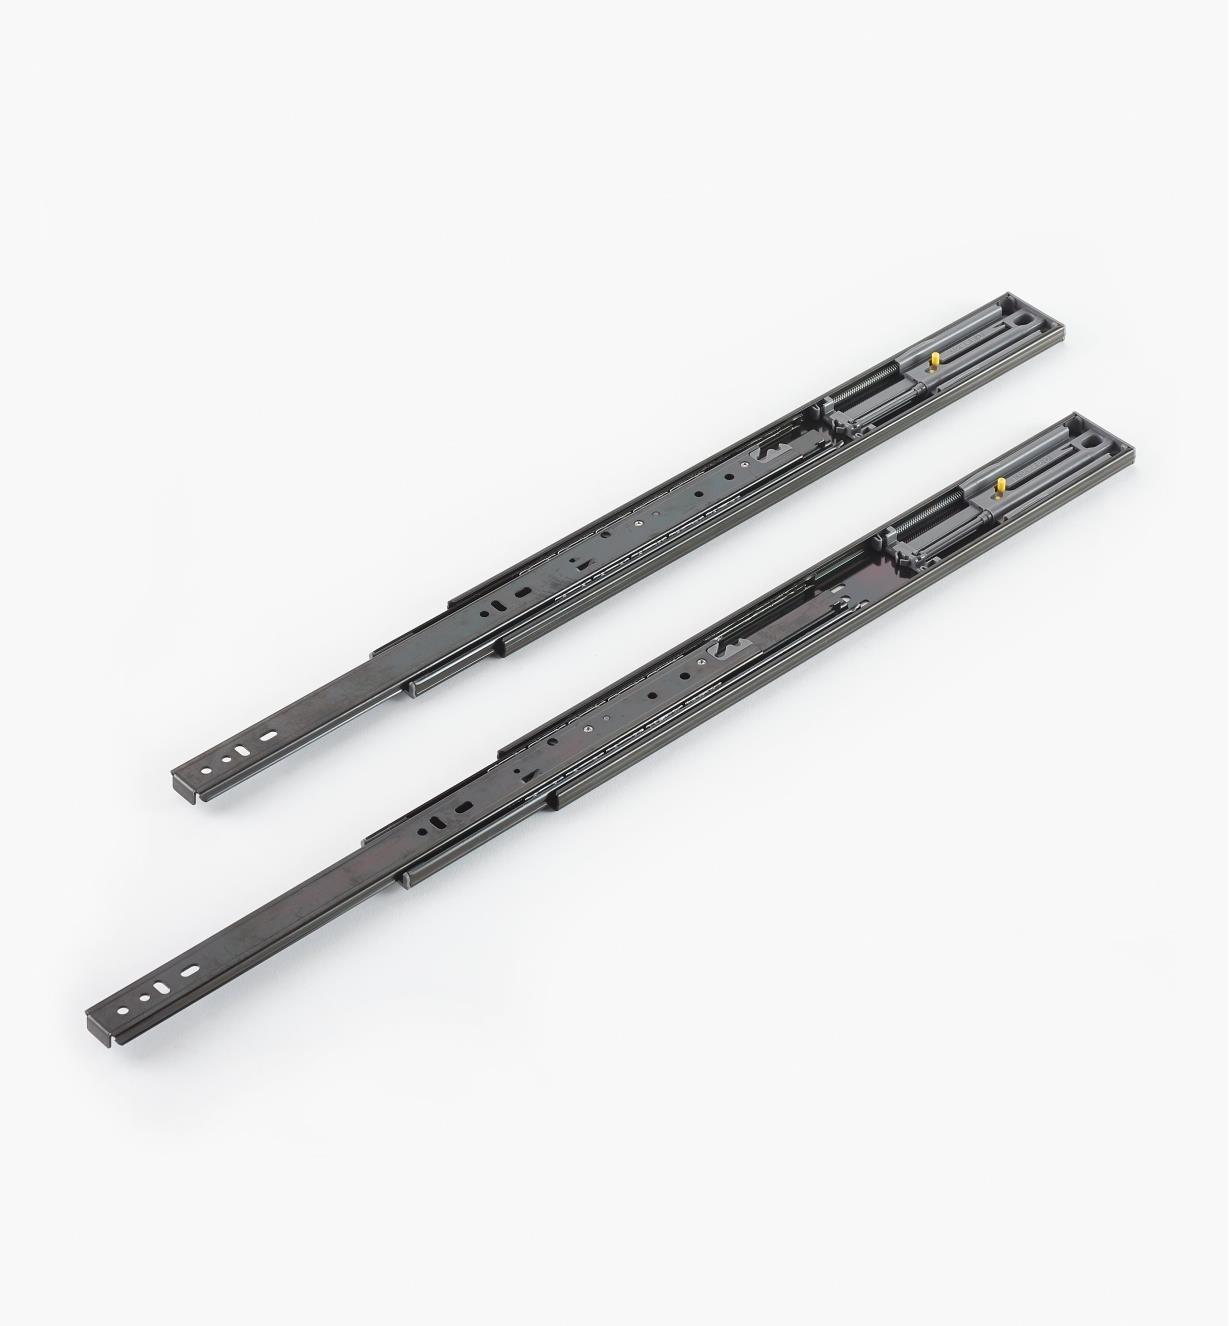 02K5240 - Black Finish, 400mm (16"), Soft-Closing Regular Extension Slides, pr. (75 lb)